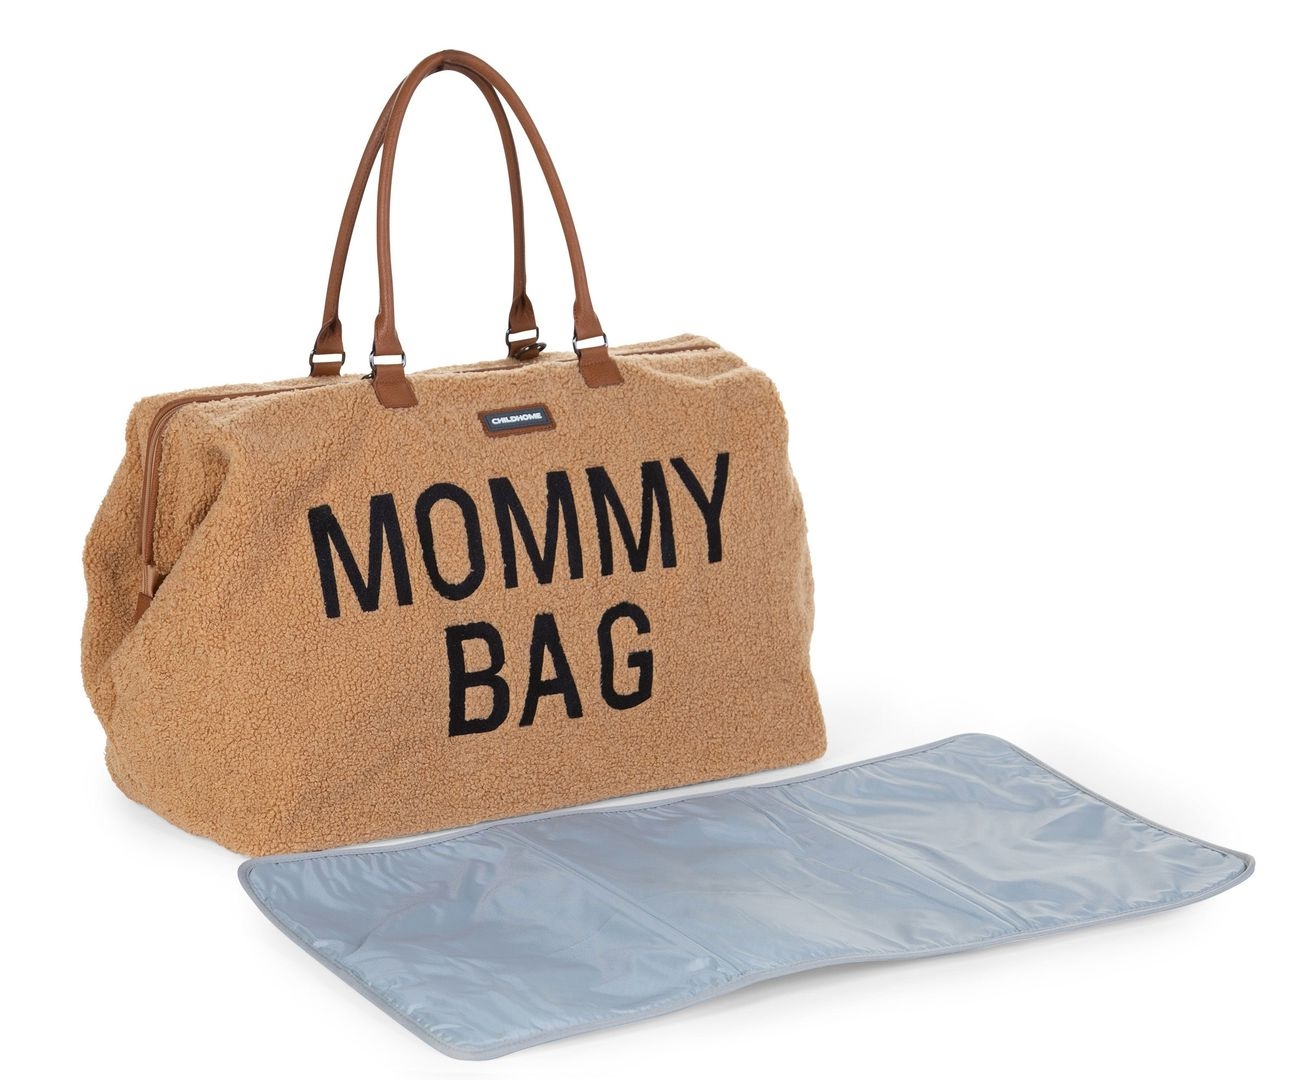 Mommy Bag Teddy Braun 6